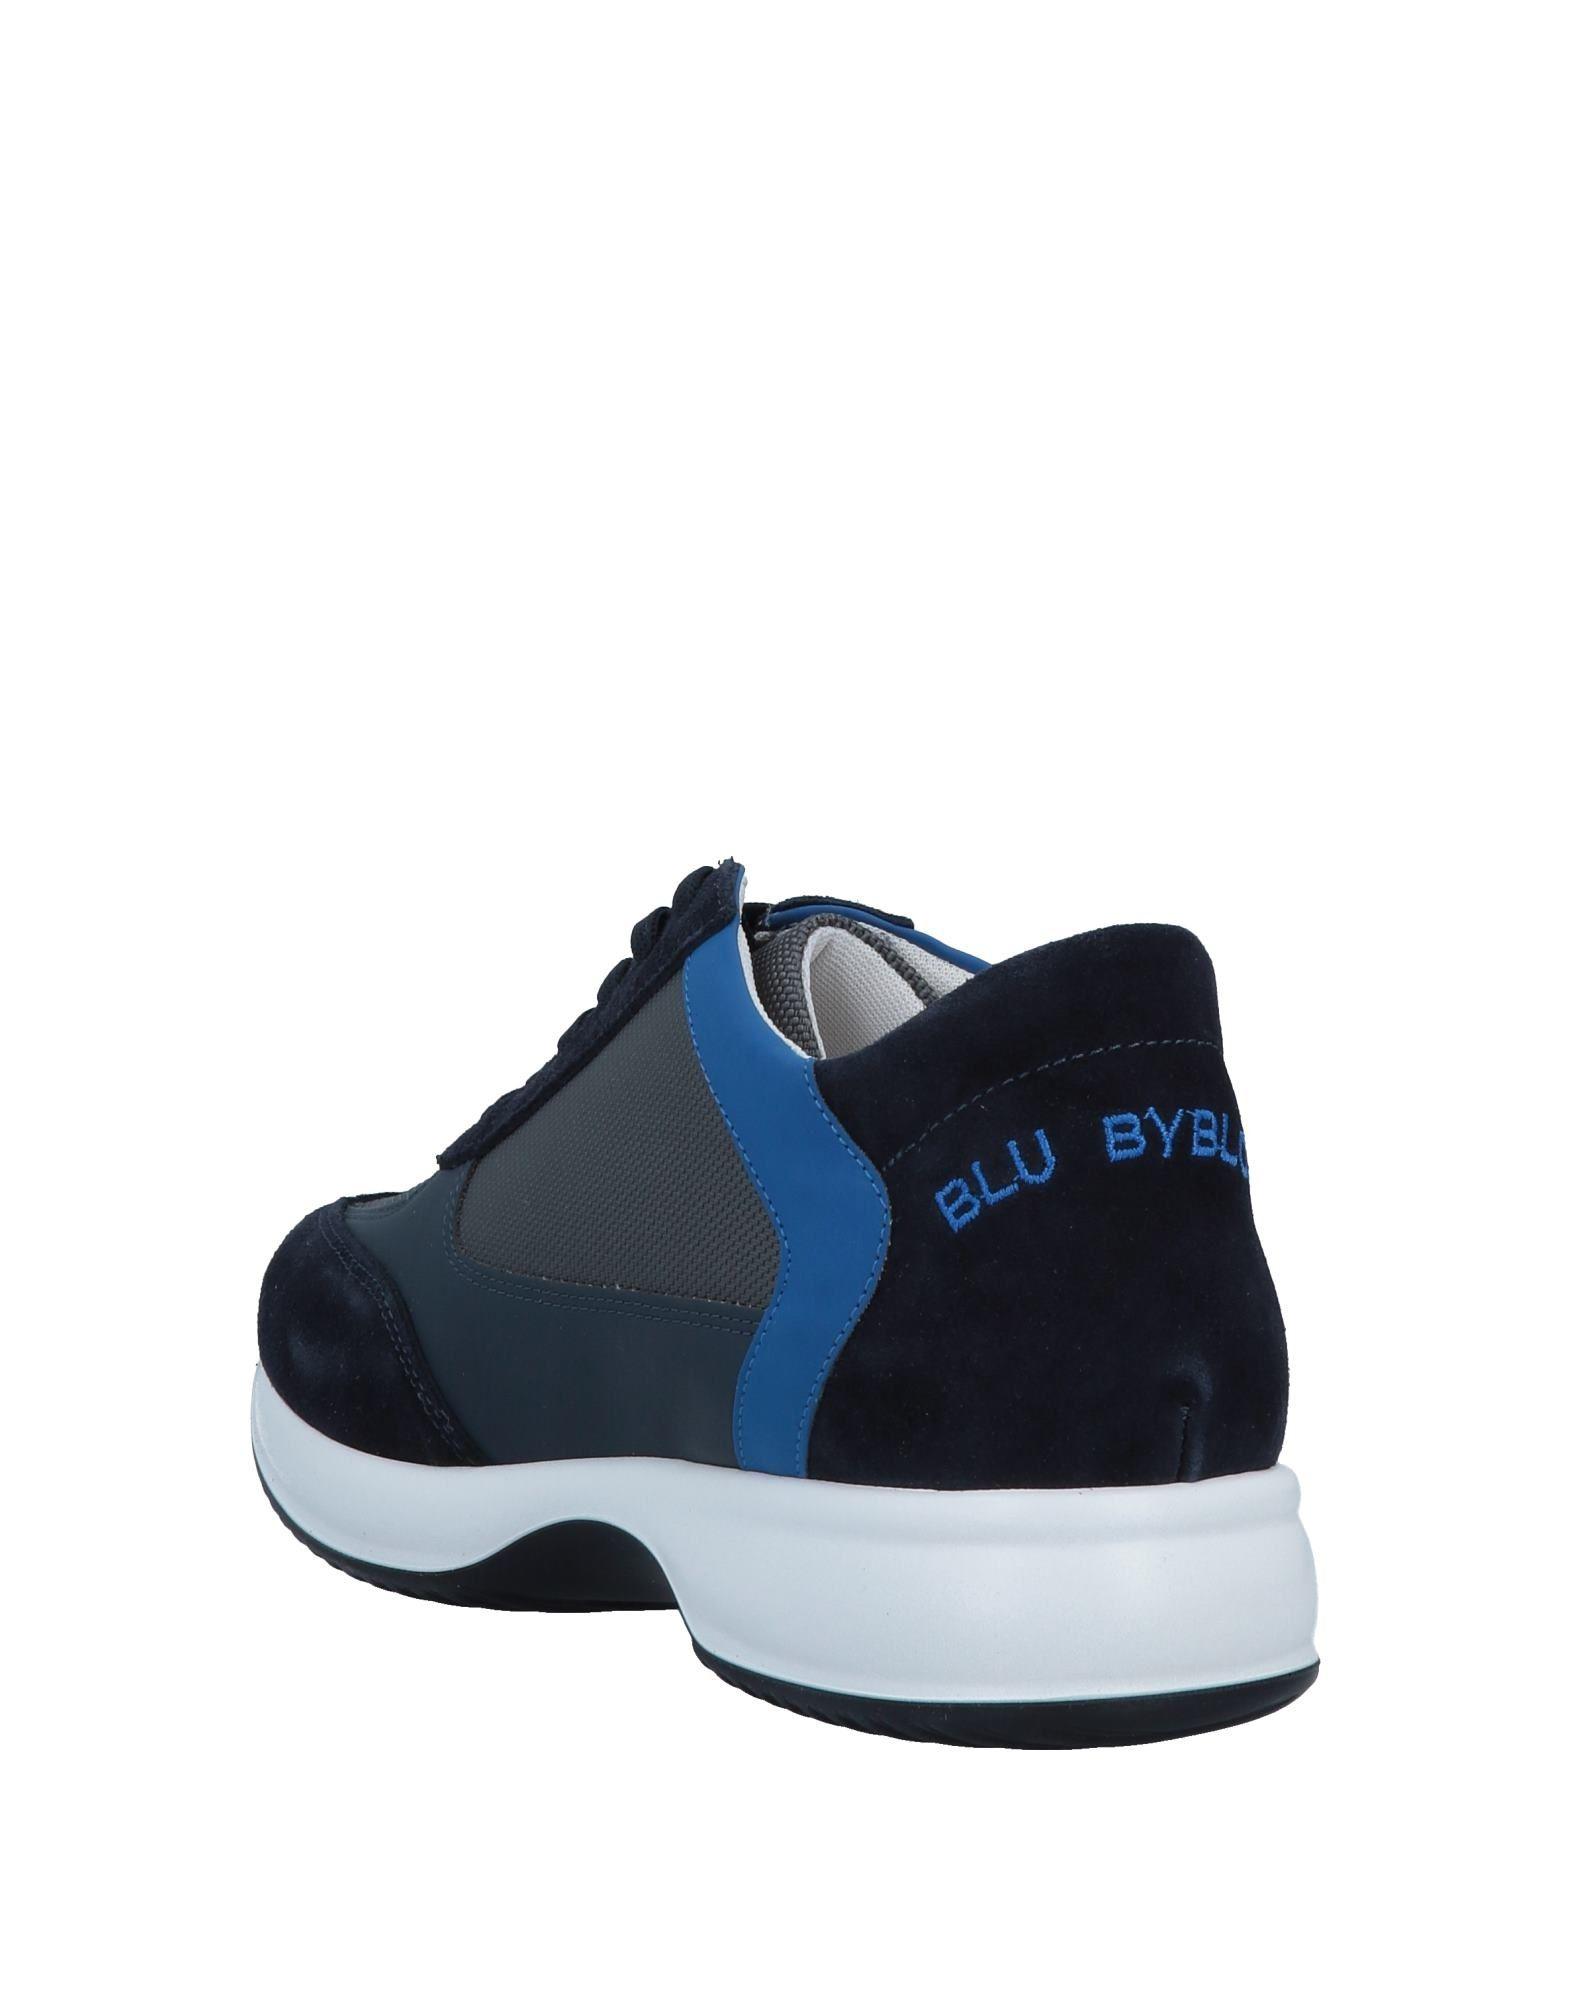 Blu Byblos Leather Low-tops & Sneakers in Dark Blue (Blue) for Men | Lyst